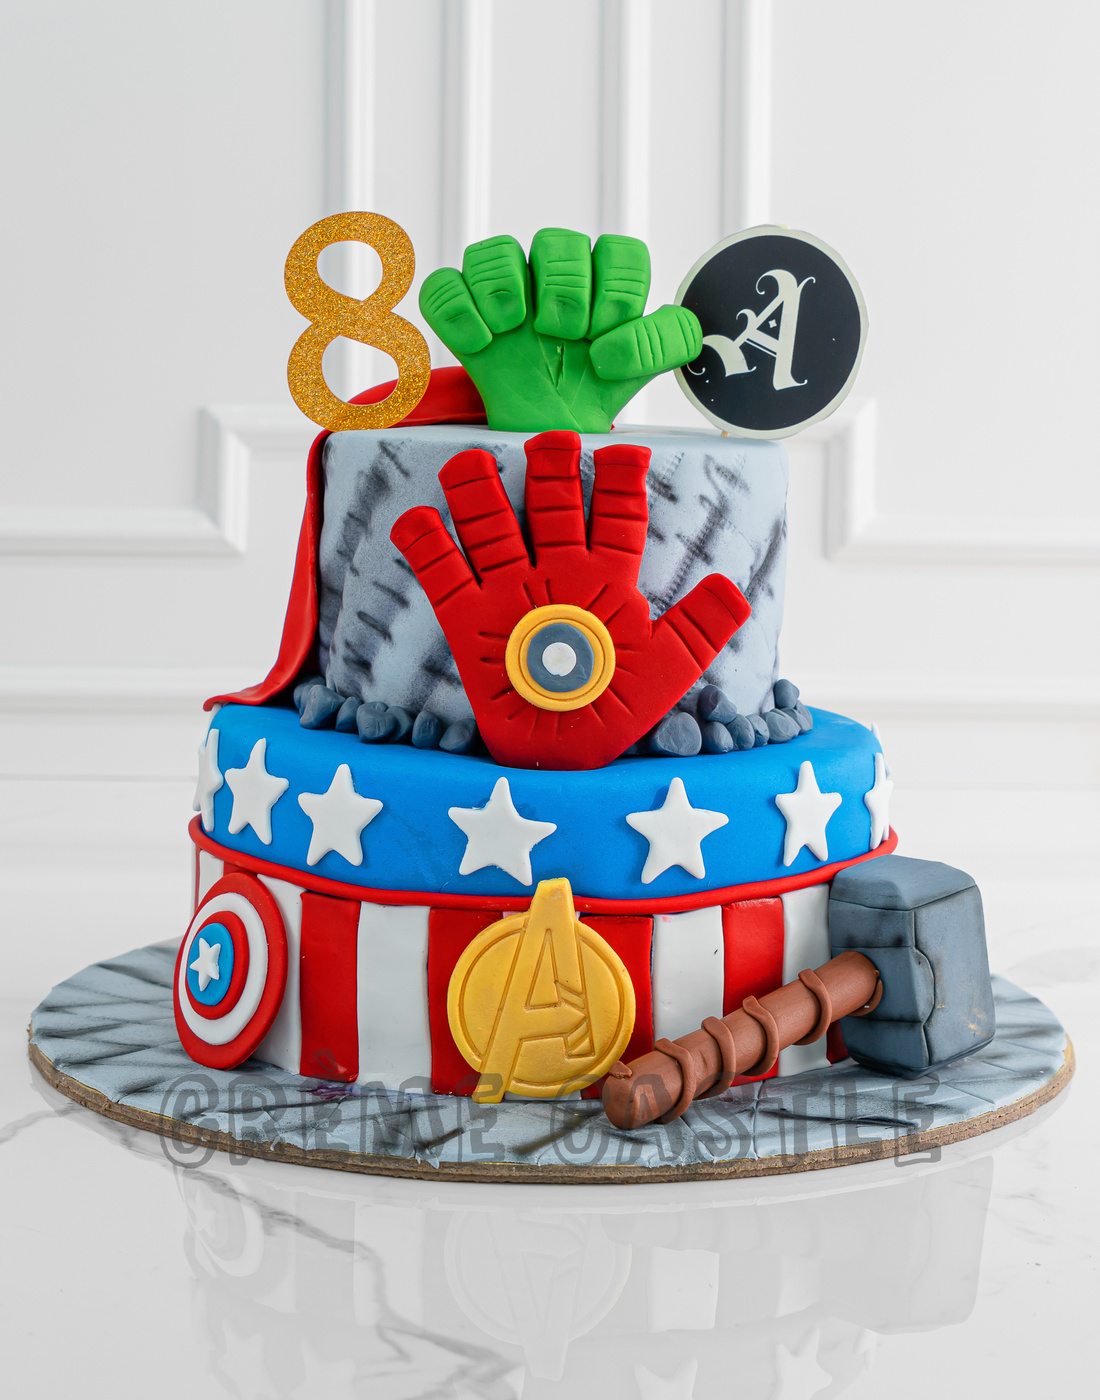 Ultimate Avengers Cake - B&T Kustom Designs – Creme Castle